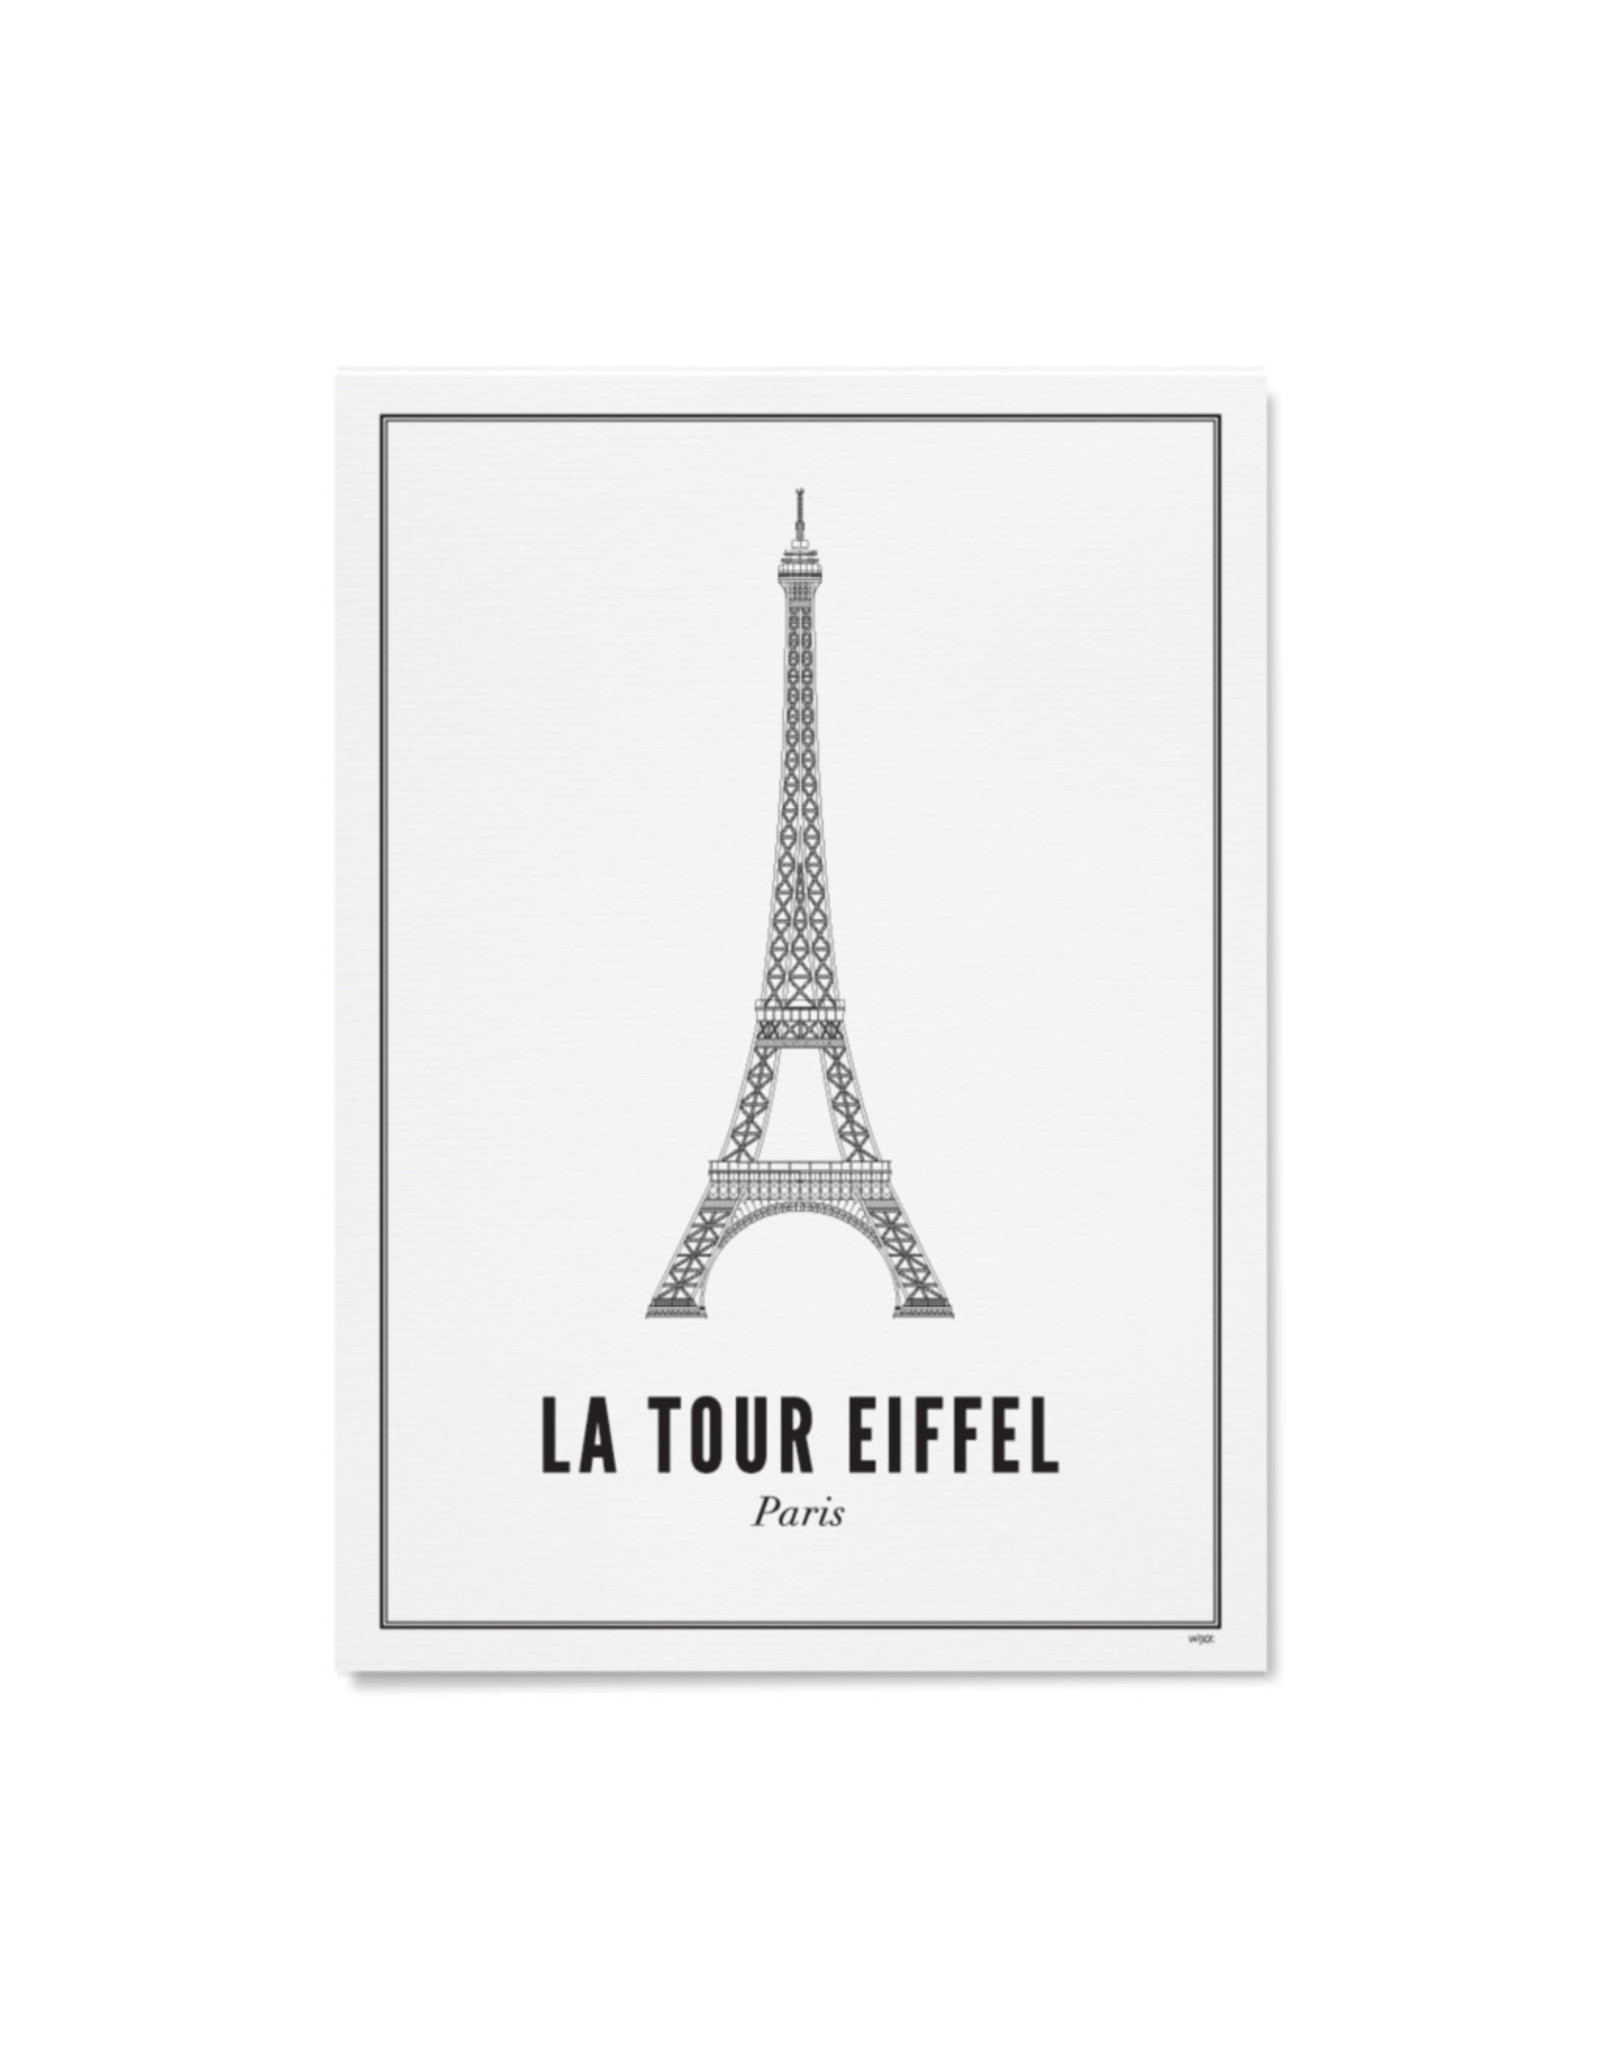 WIJCK. Paris - La Tour Eiffel 40 x 50cm